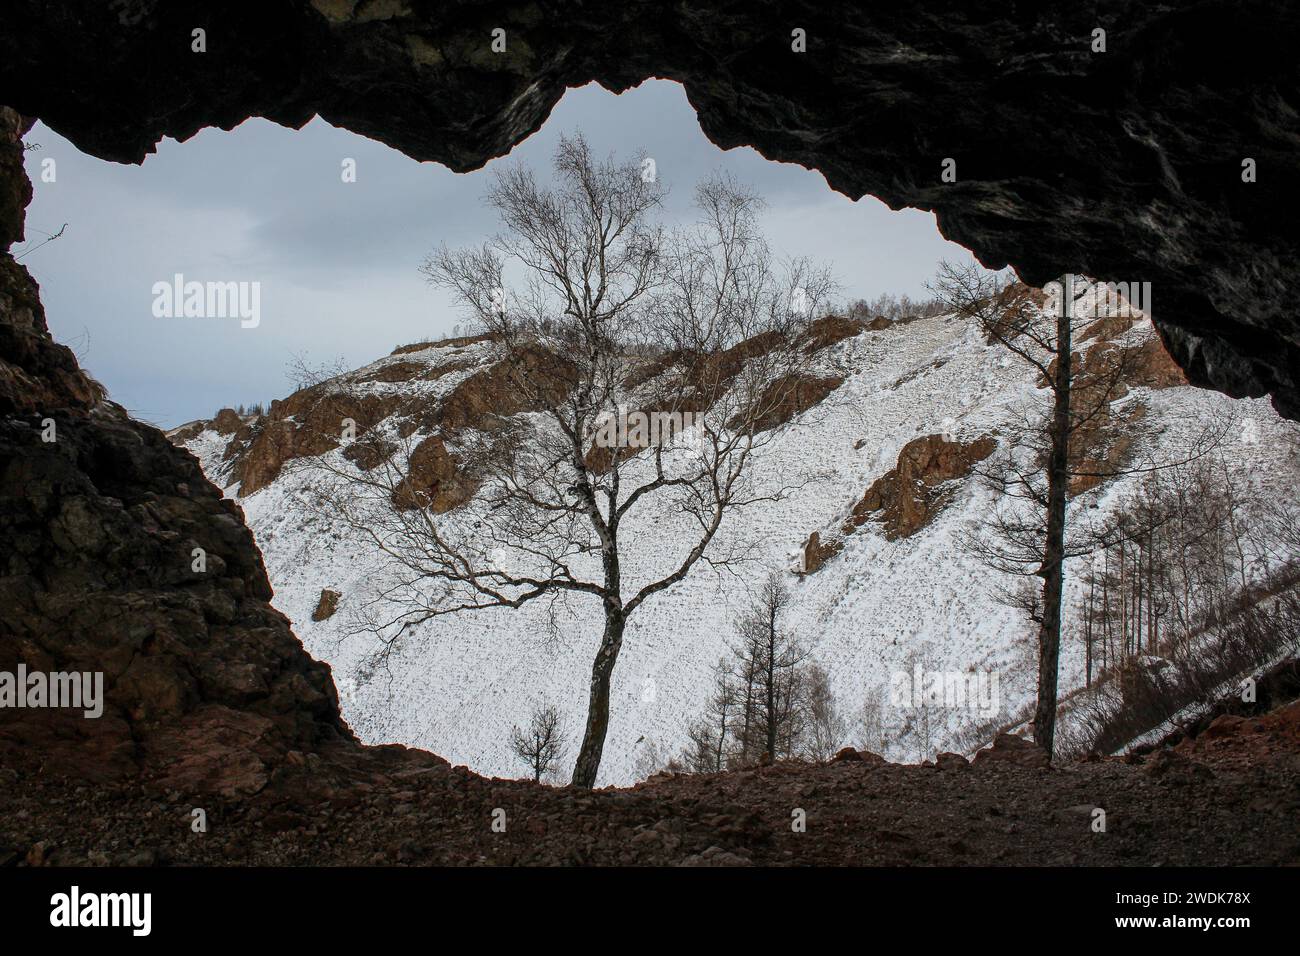 Vista dalla grotta sul monte innevato con rocce e alberi. Formazione rocciosa arco naturale crea una cornice, paesaggio invernale siberiano. Crinale di Torgashinsky Foto Stock